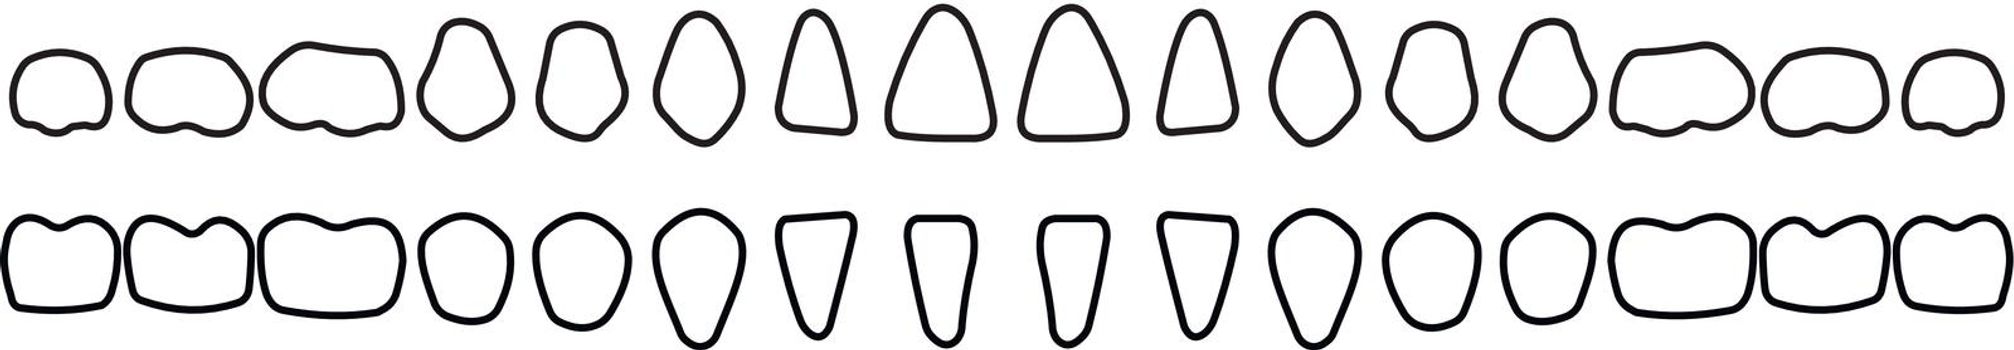 dental row on white